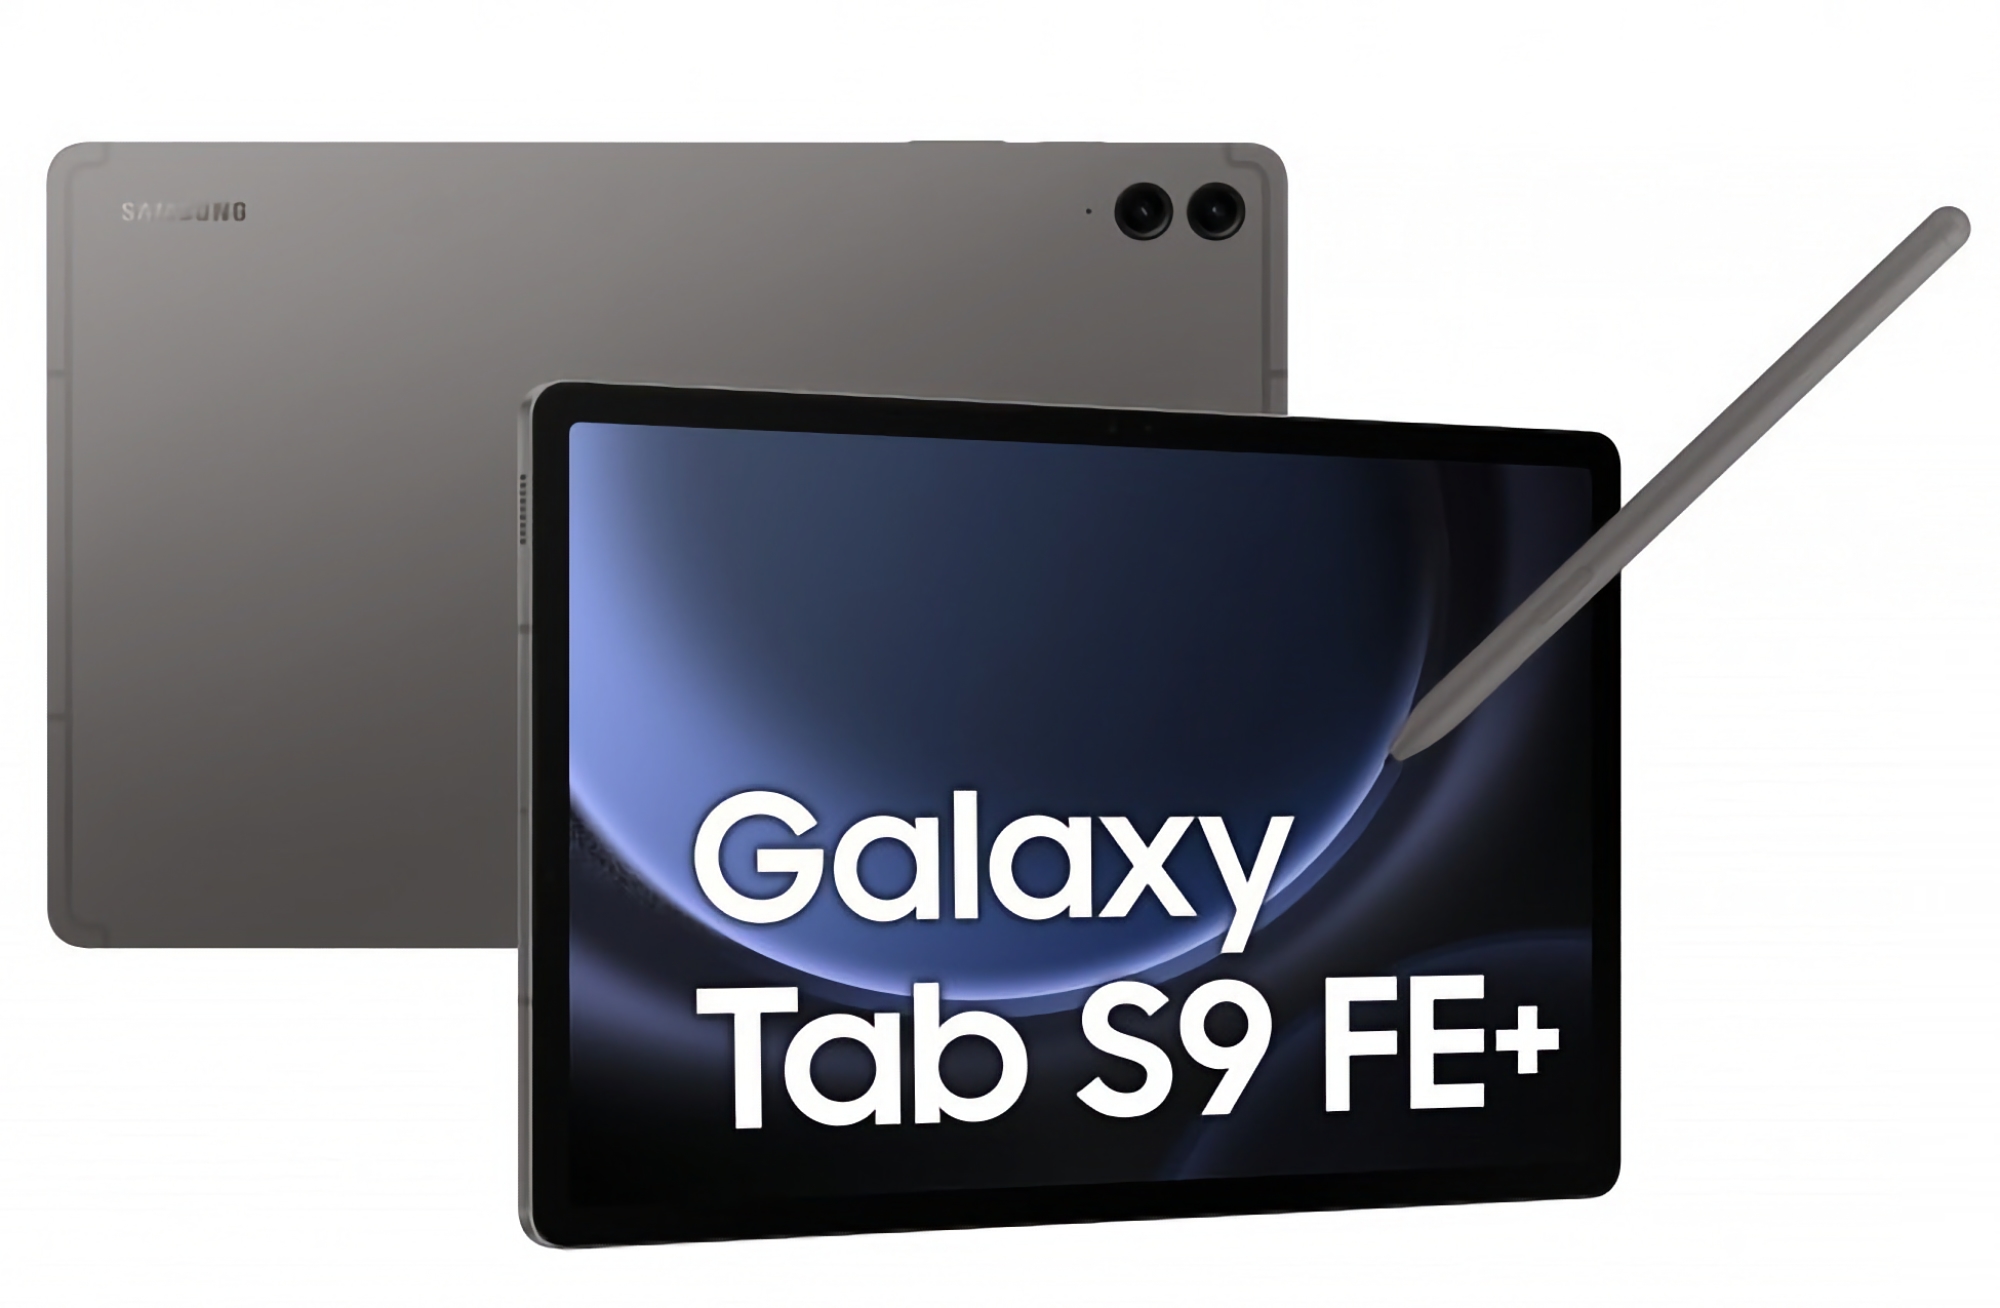 Samsung har lansert Android 14-oppdatering med One UI 6 for Galaxy Tab S9 FE+.